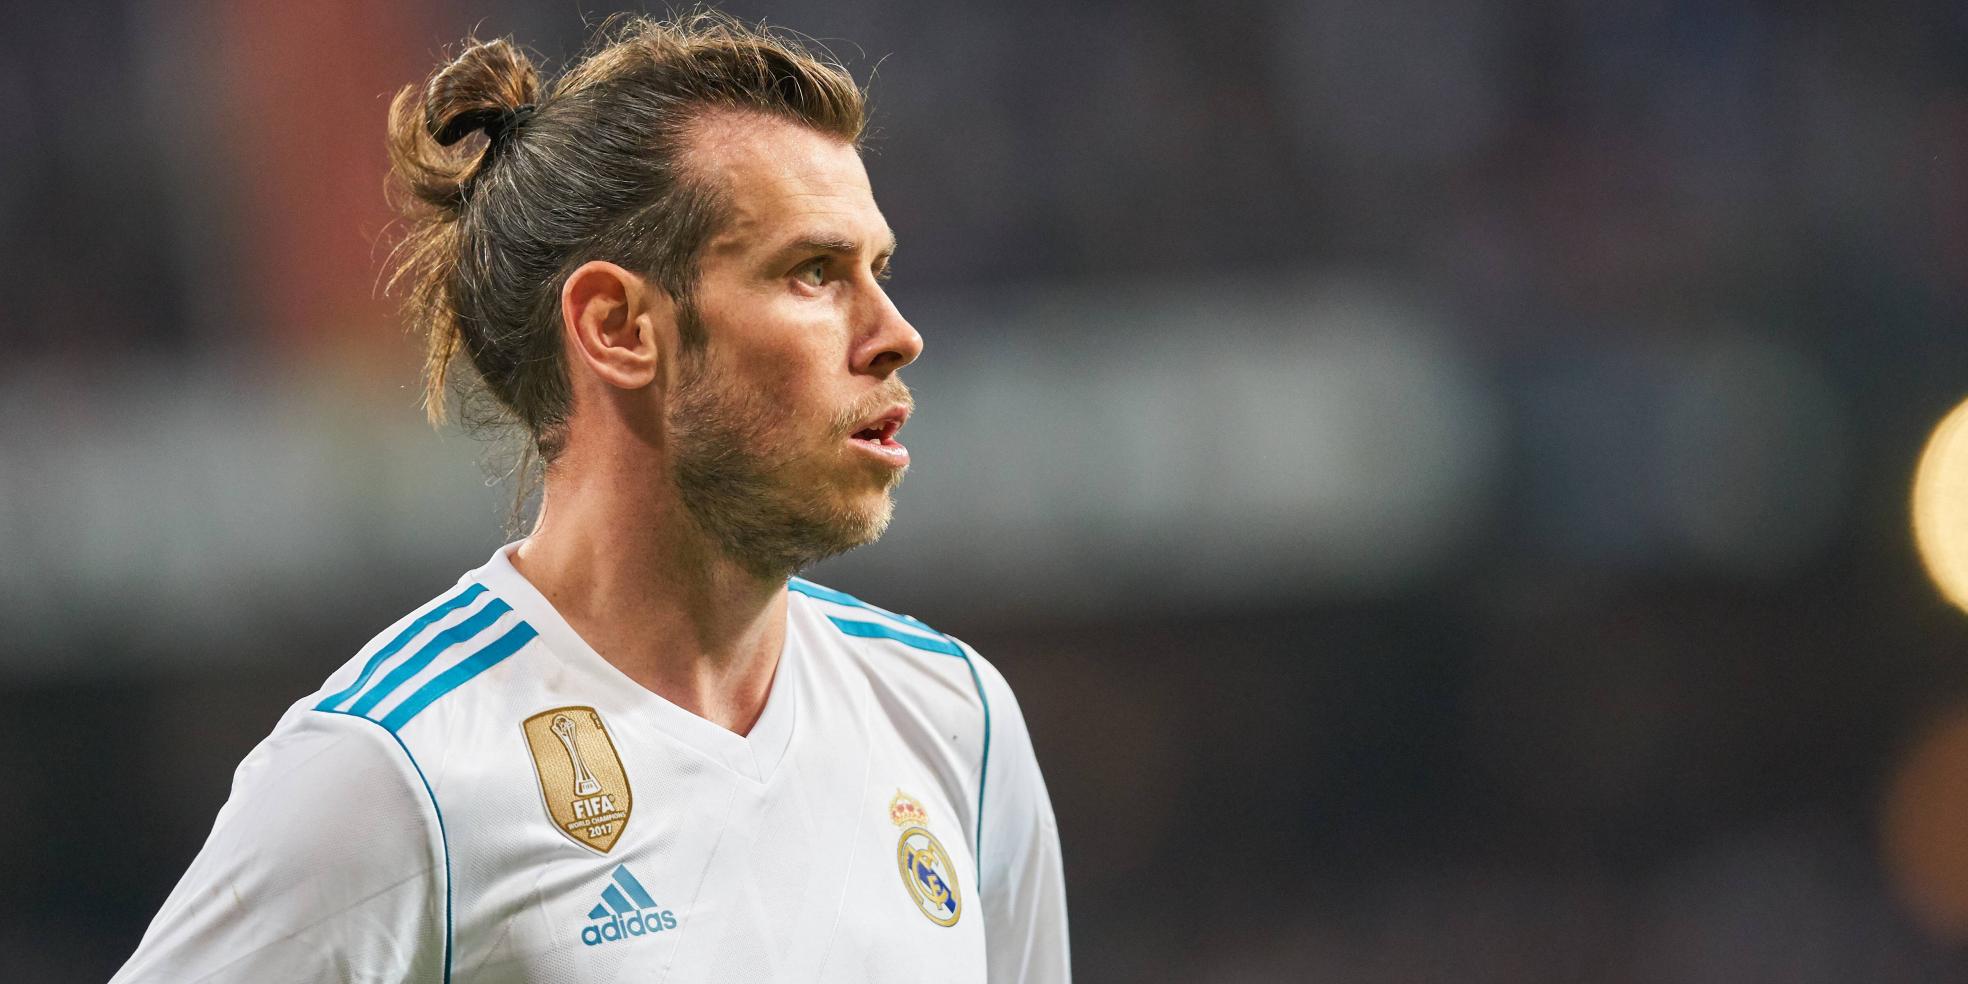 Gareth Bale von Real Madrid